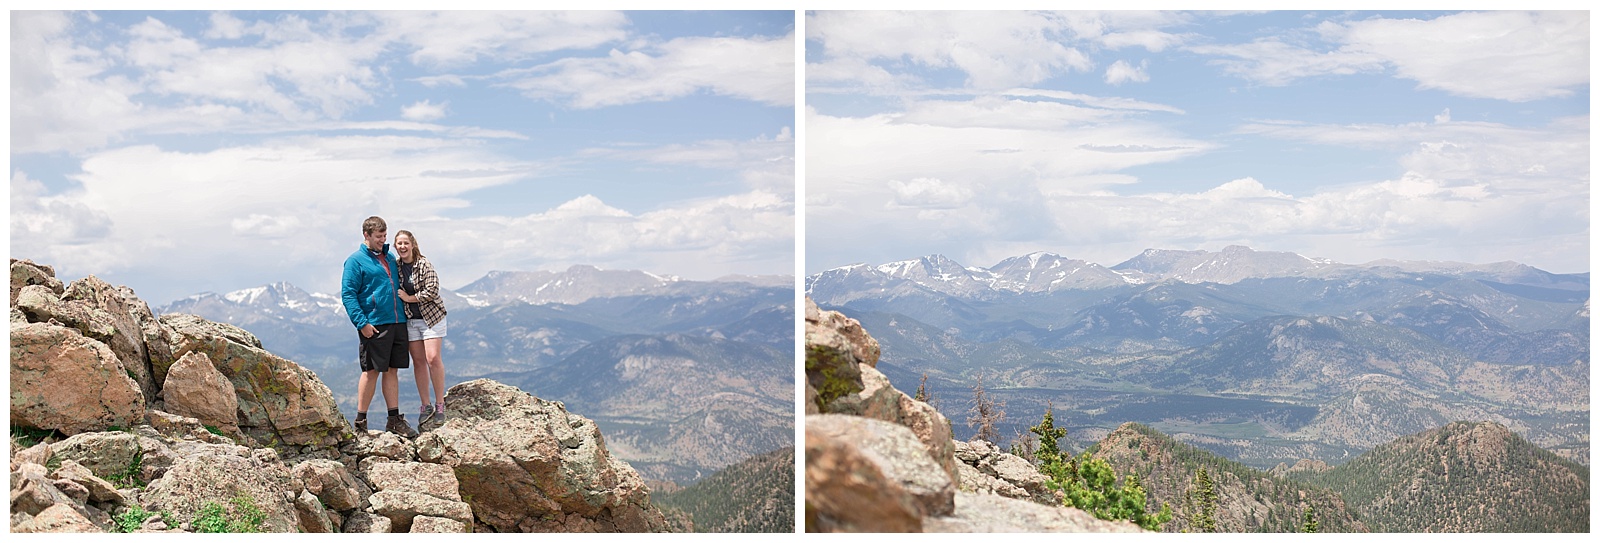 Colorado Vacation | Monica Brown Photography | monicabrownphoto.com